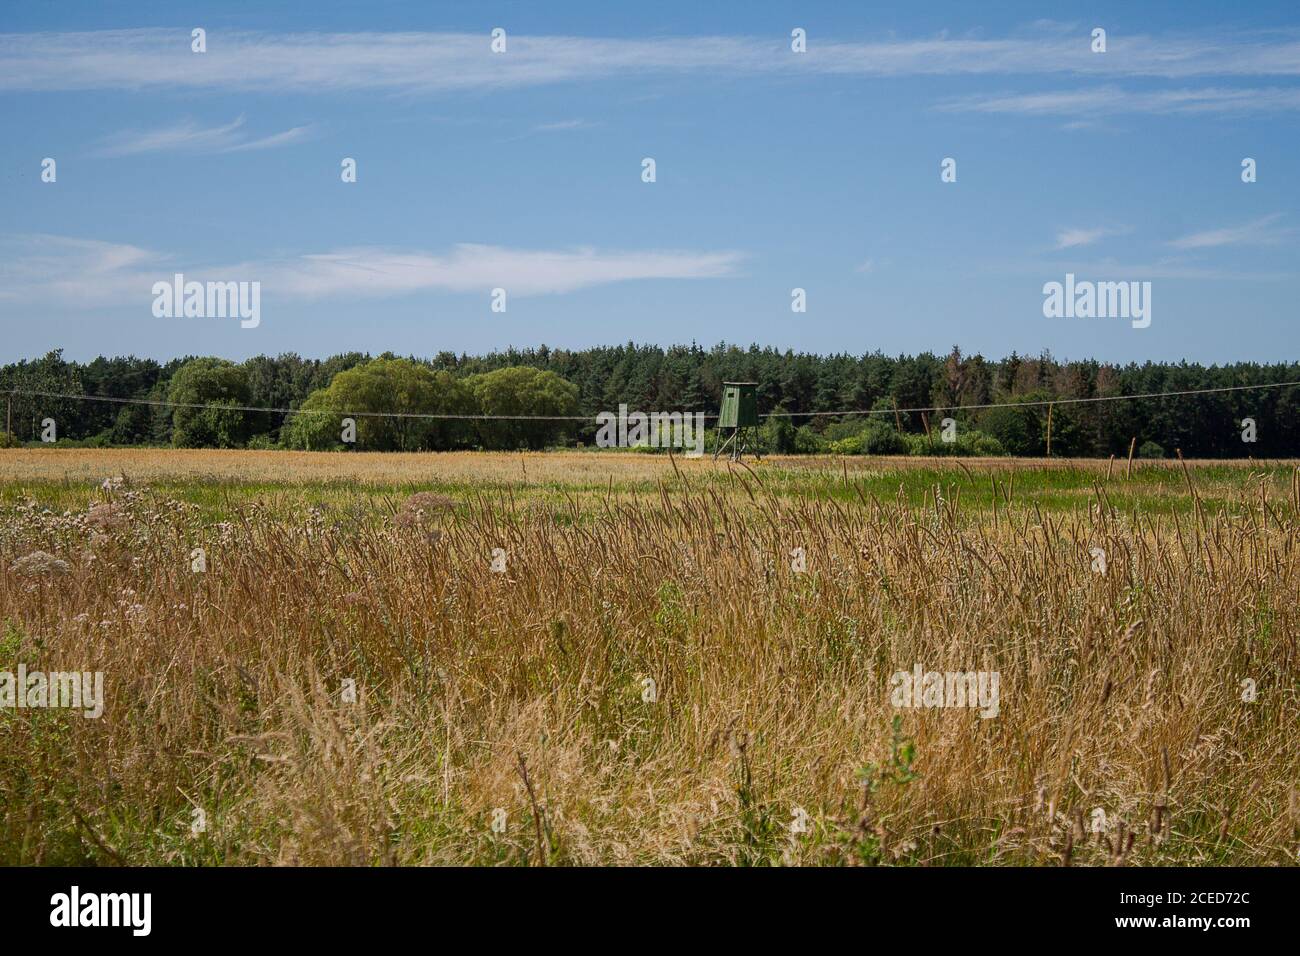 Landschaft mit einem Jägerpfosten. Wilde Wiese im Vordergrund dahinter sieht man einen Wald. Stockfoto